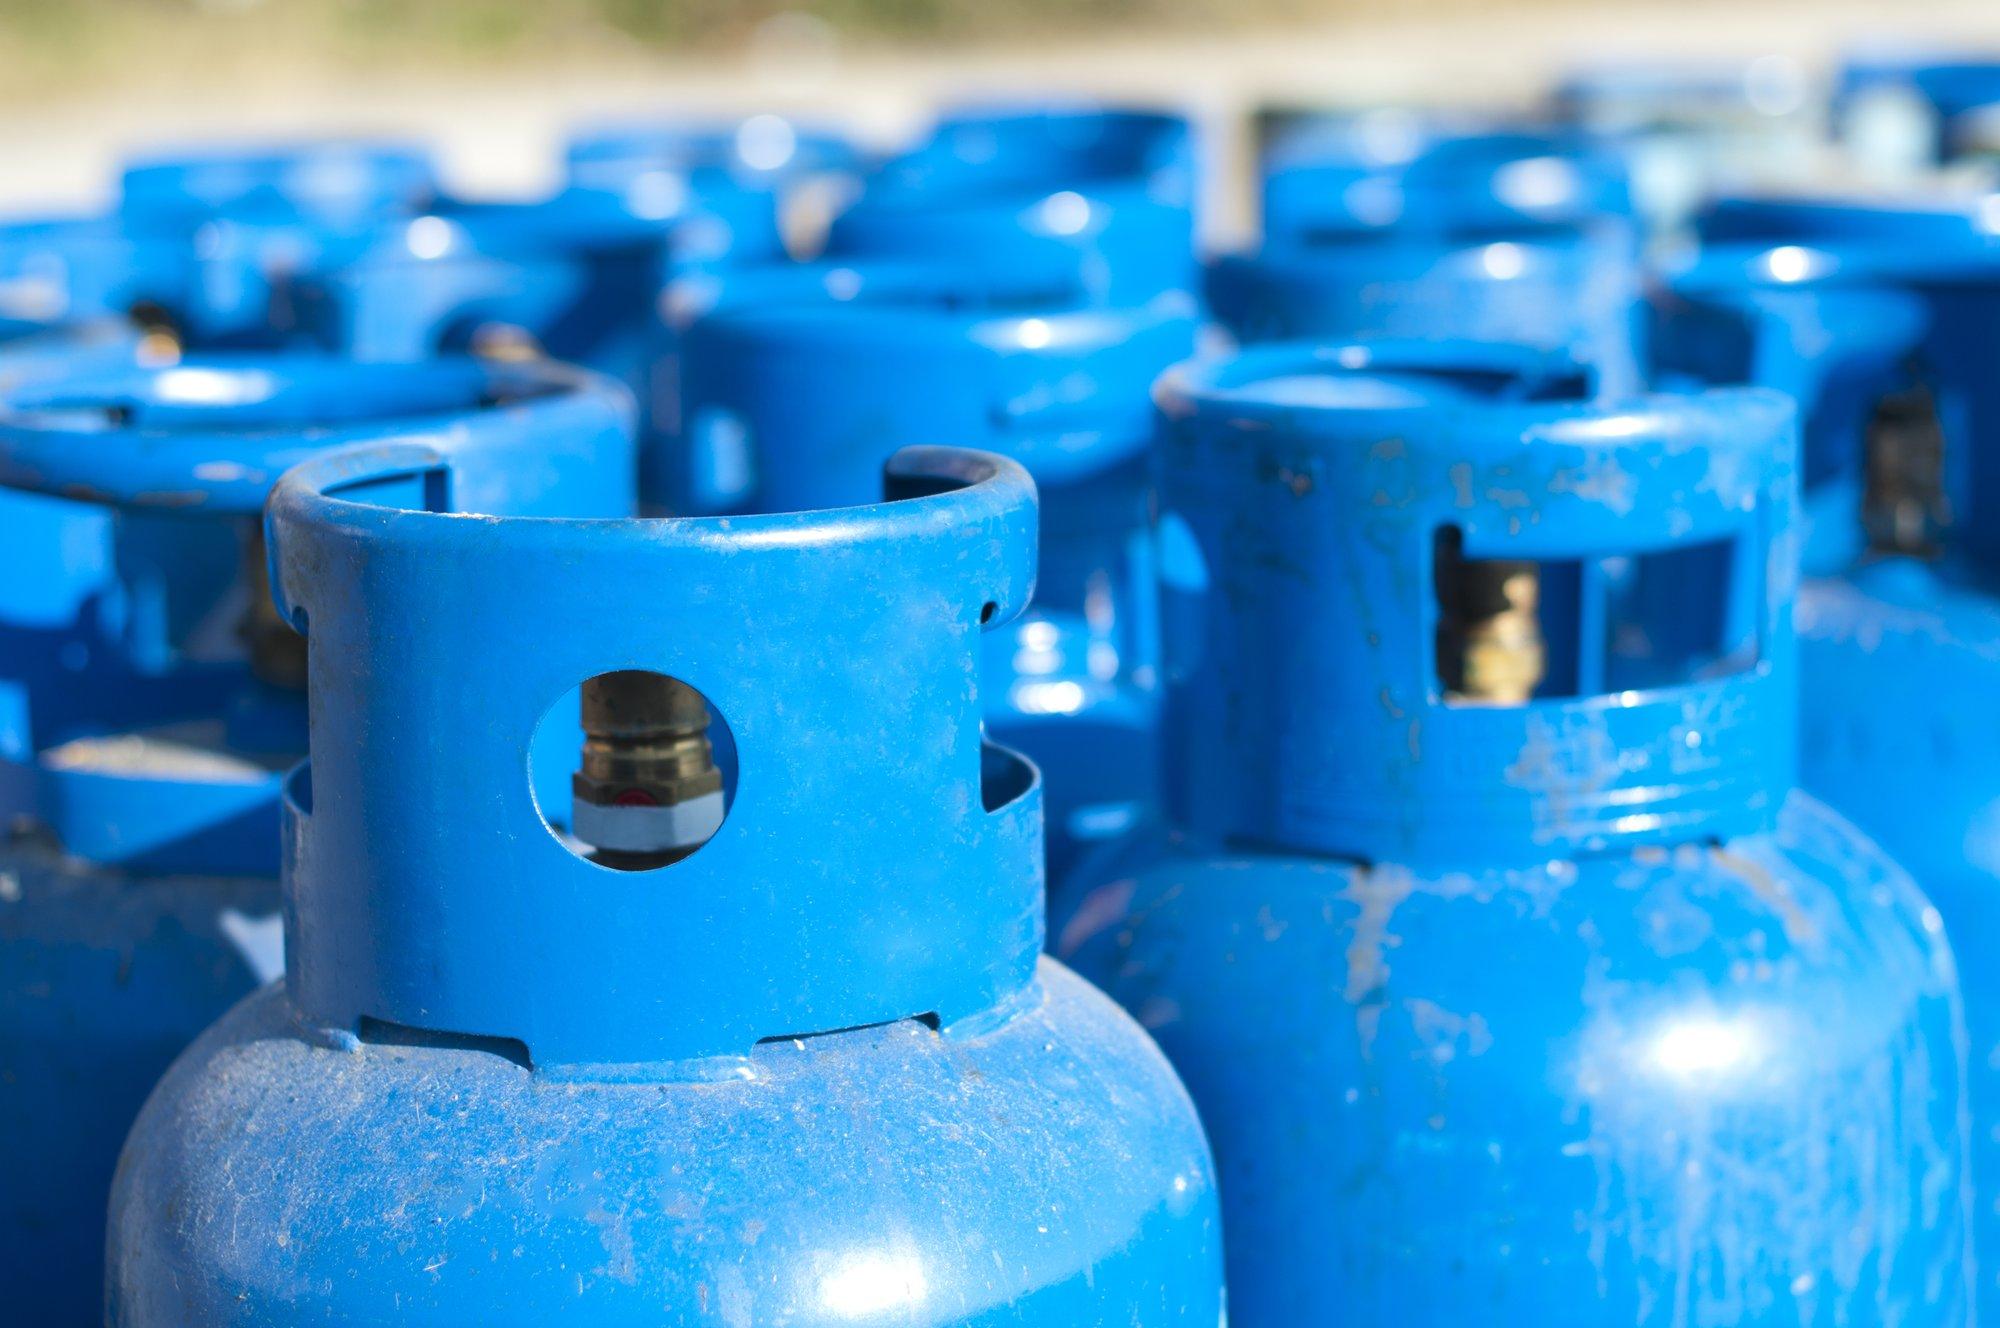 Министерство рассматривает исключения в установке акциза на газ: бизнес рад, эксперты критикуют позицию